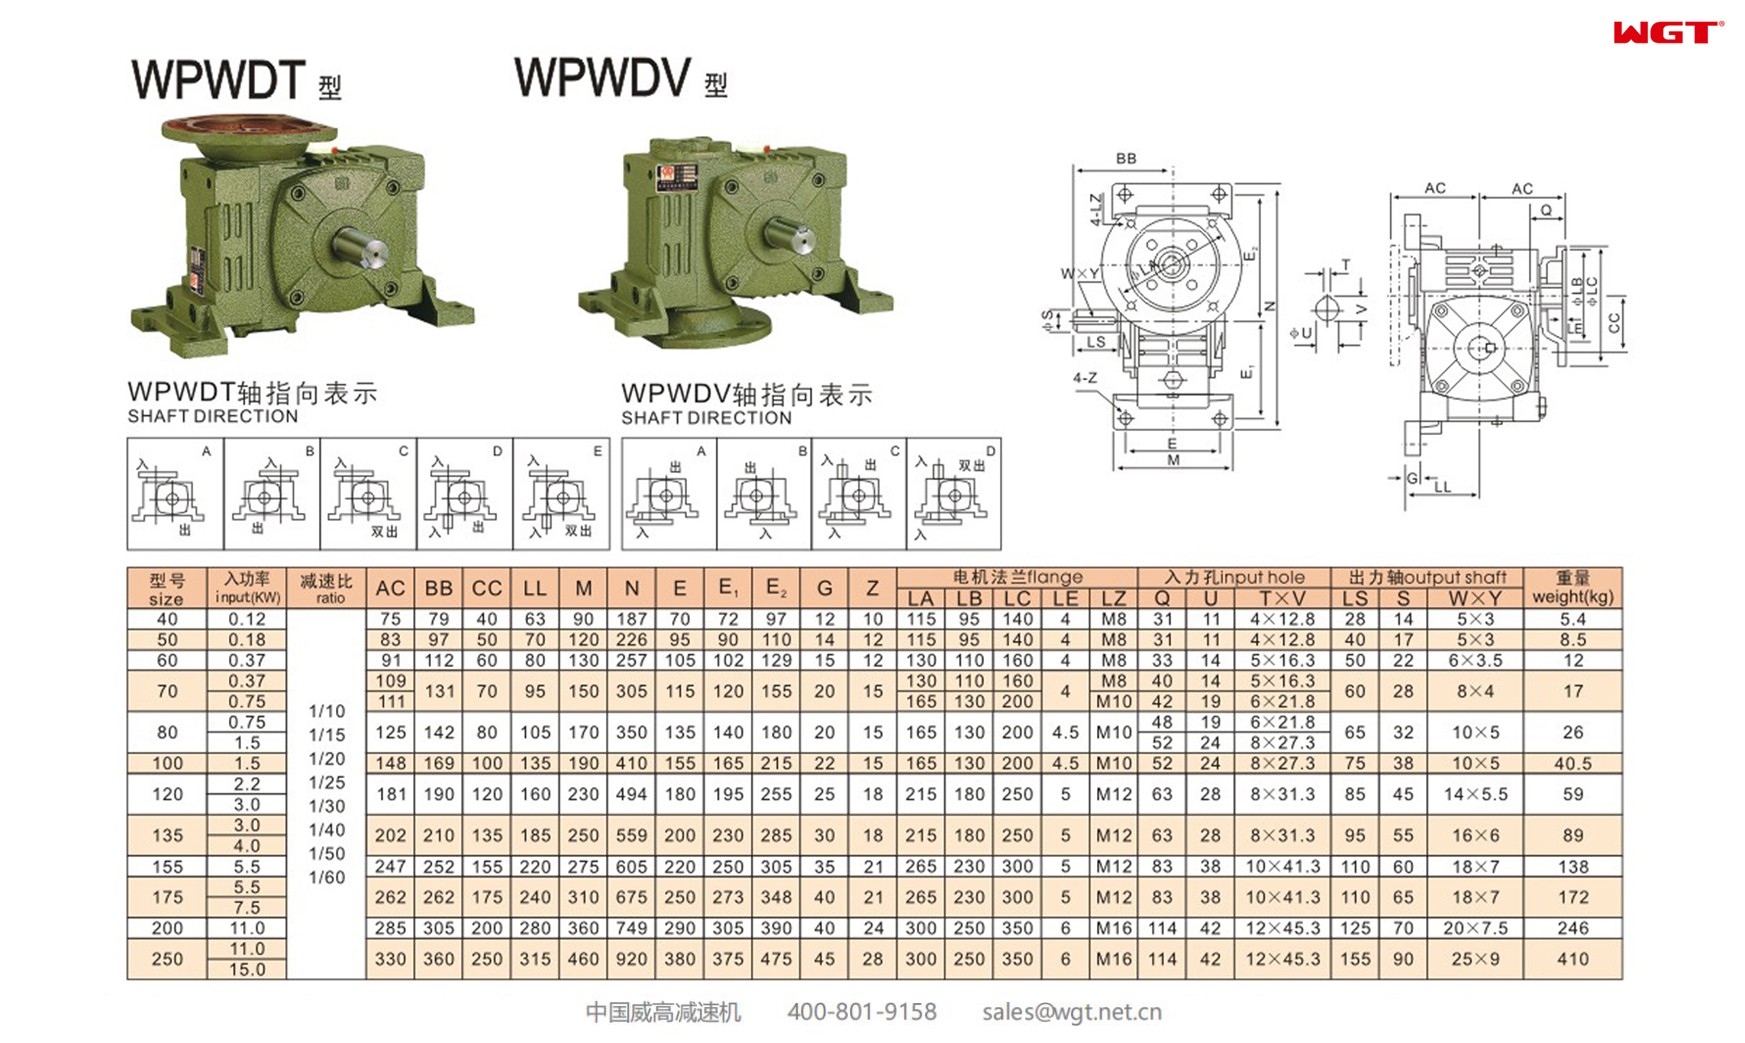 WPWDT70 worm gear reducer universal speed reducer